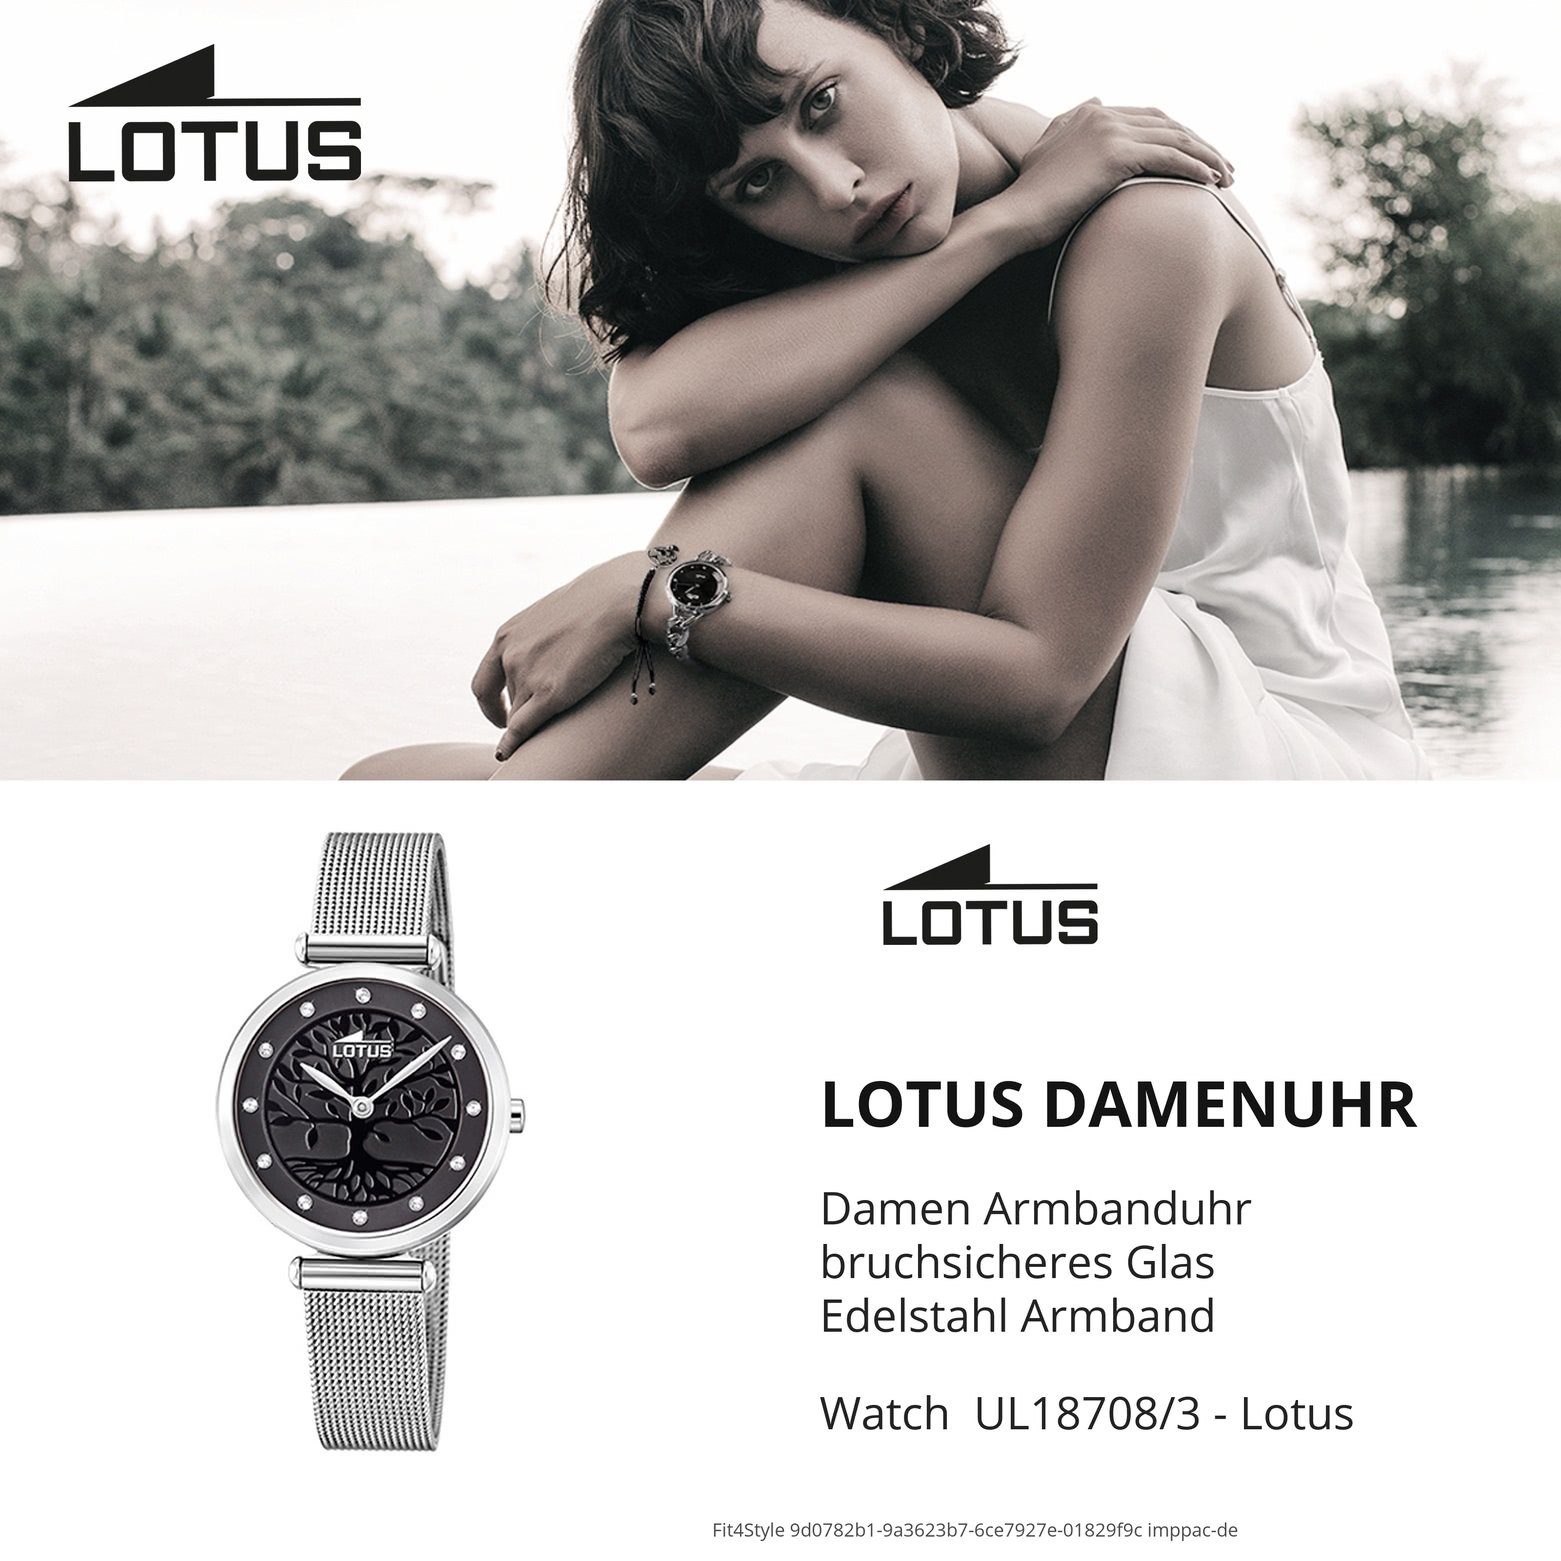 Lotus Quarzuhr LOTUS Uhr silber (ca. 29mm) Damen klein rund, Edelstahlarmband Fashion 18708/3, Damenuhr